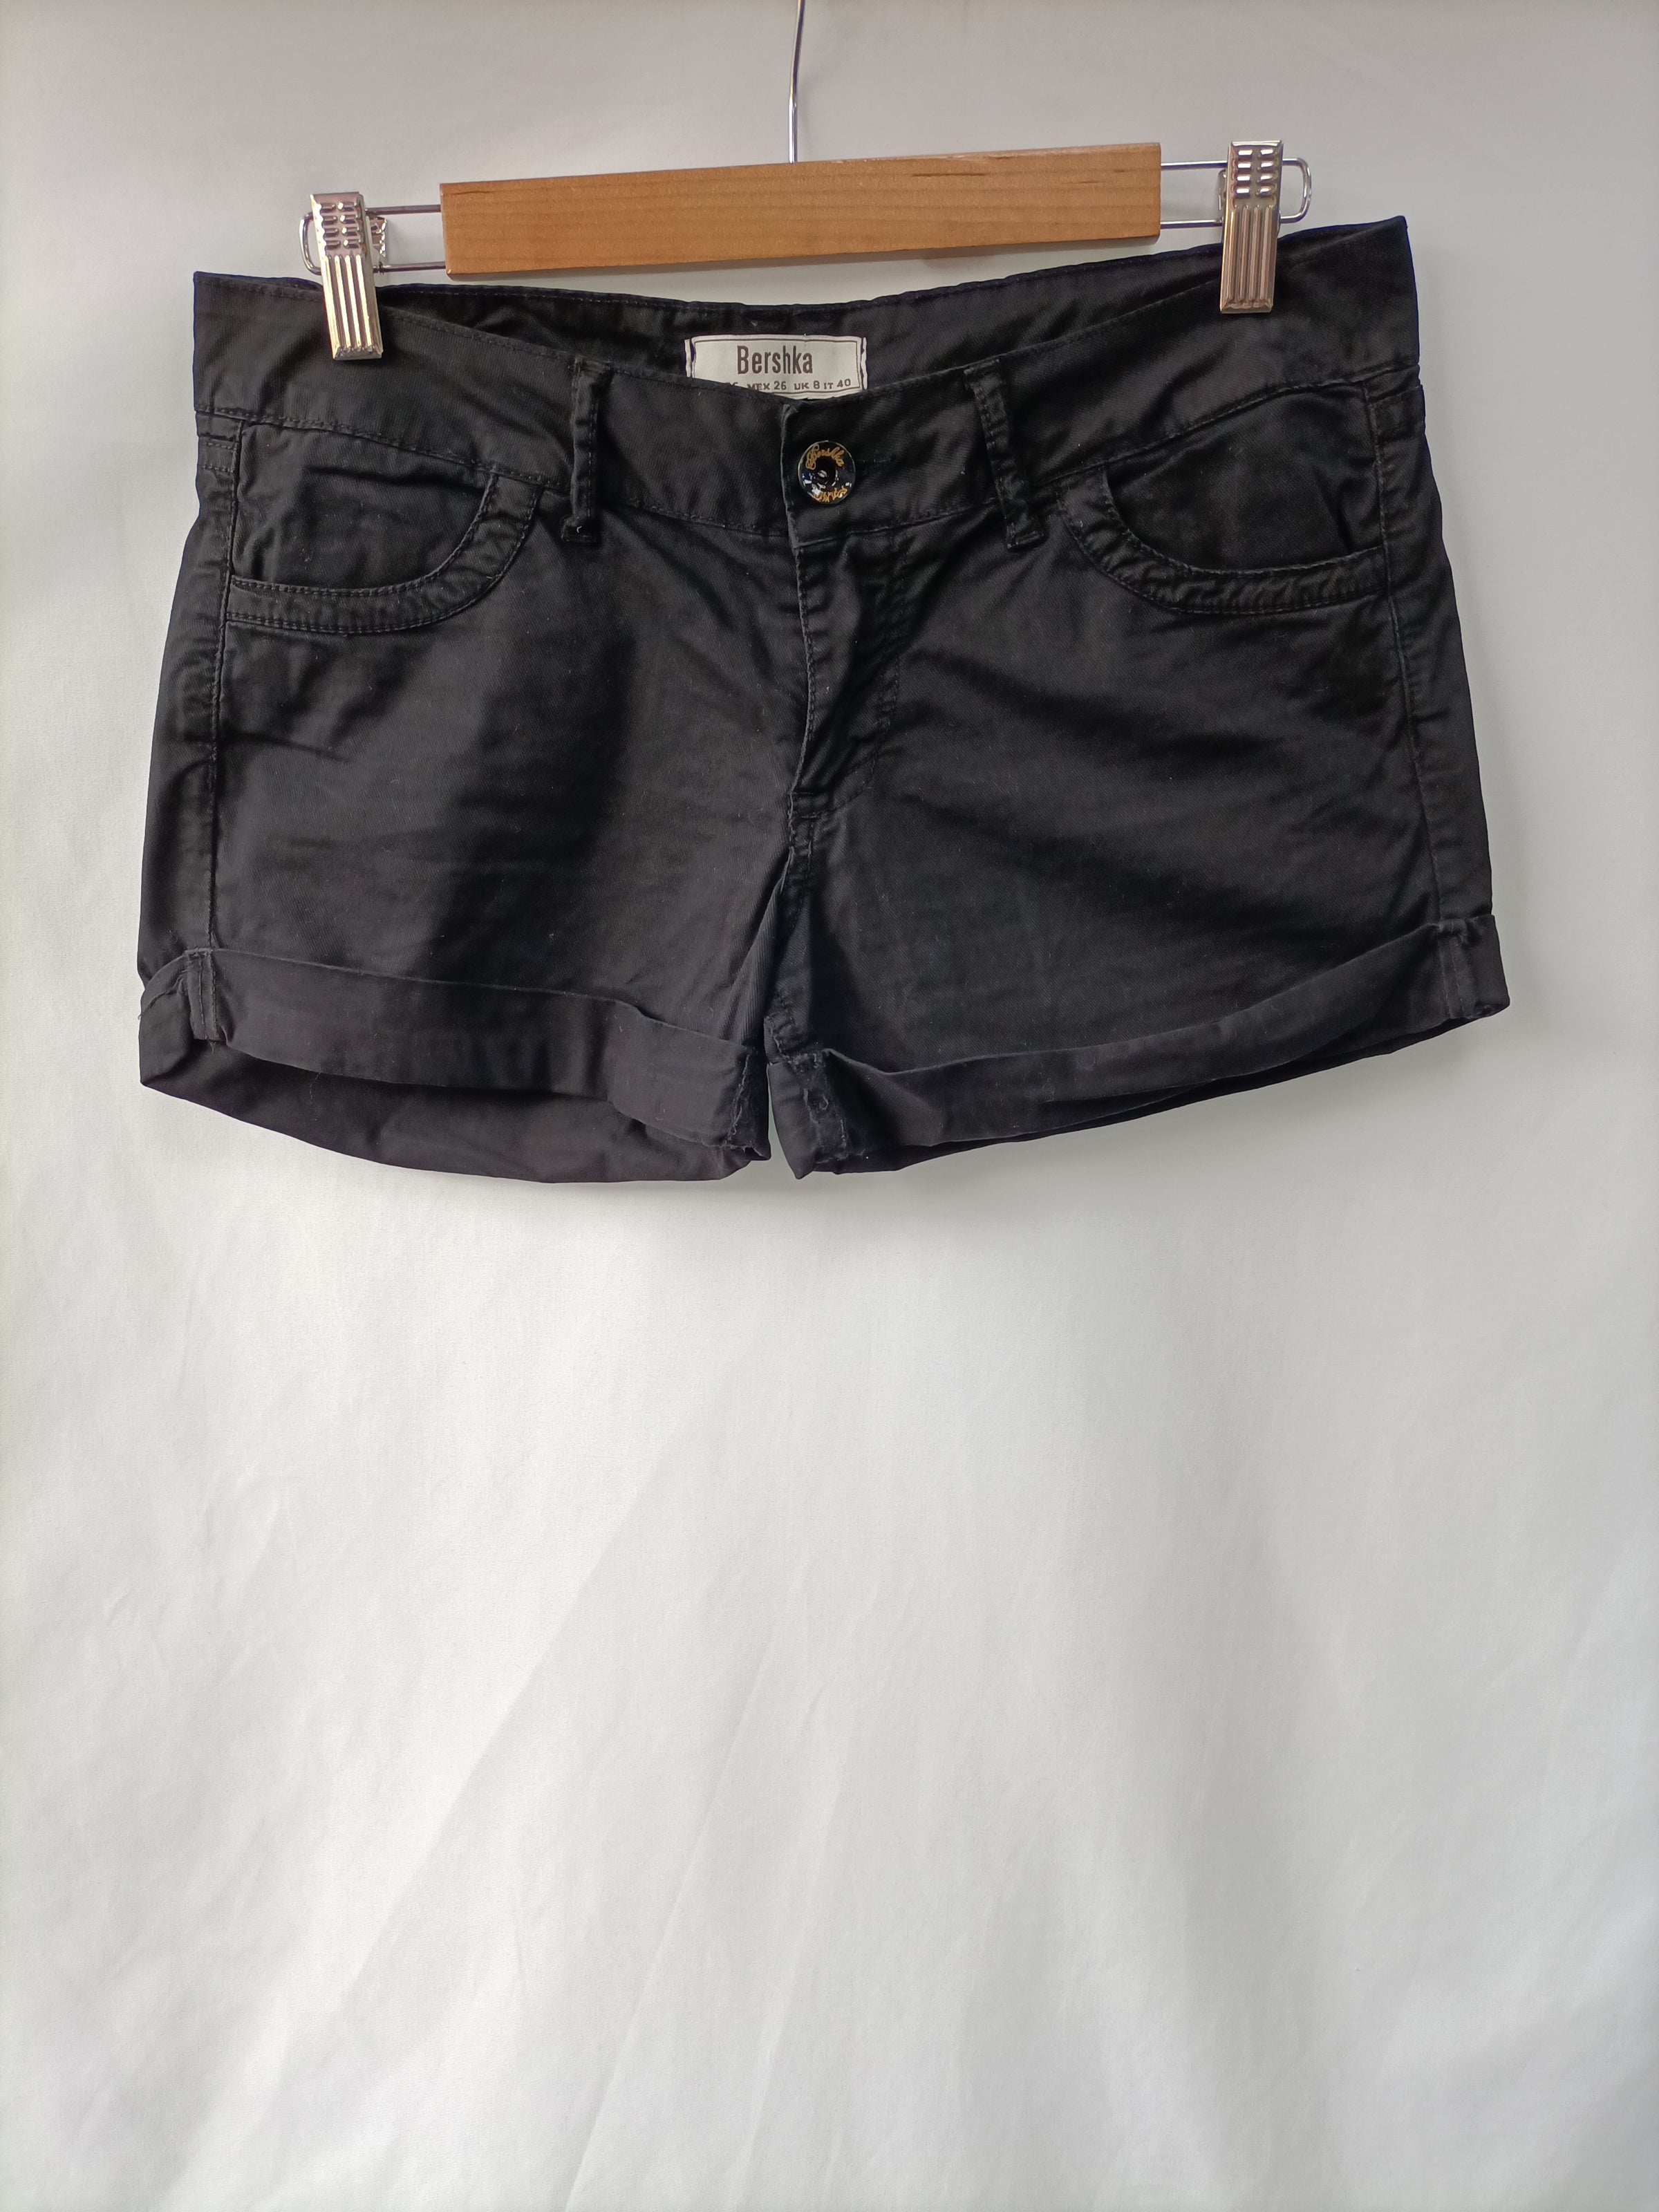 BERSHKA. Shorts negro T.36 – Hibuy